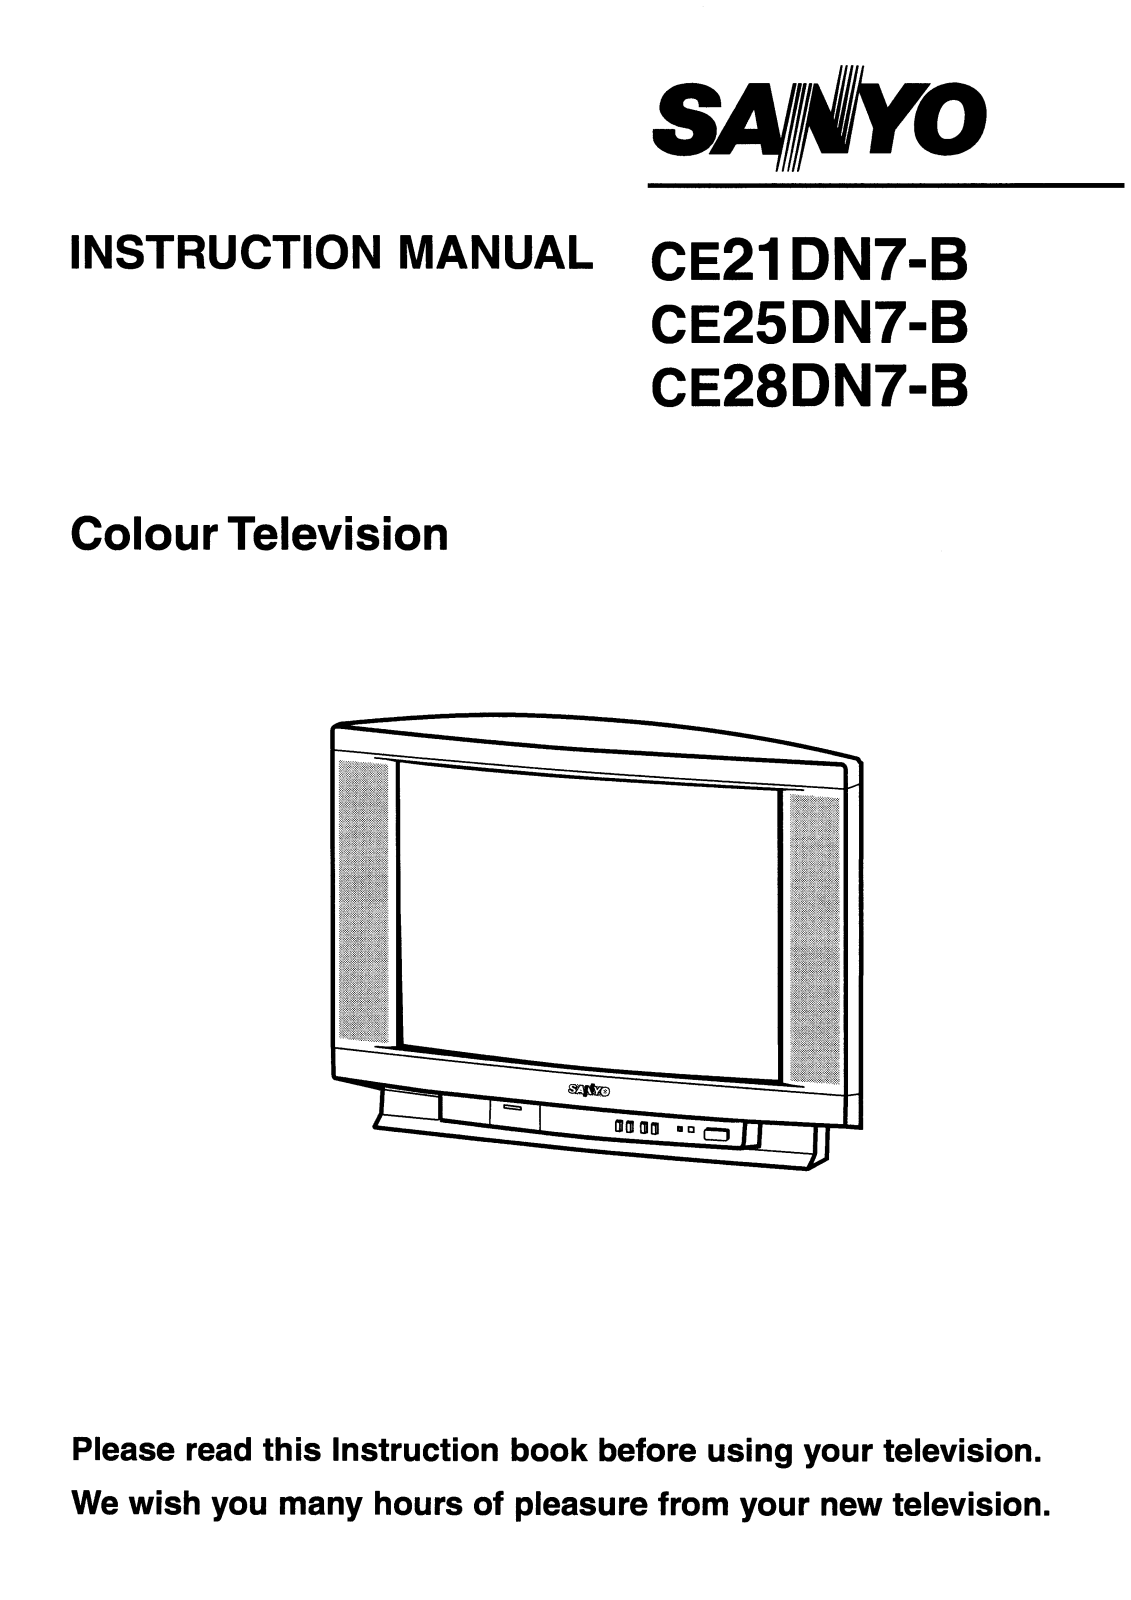 Sanyo CE28DN7-B, CE25DN7-B Instruction Manual